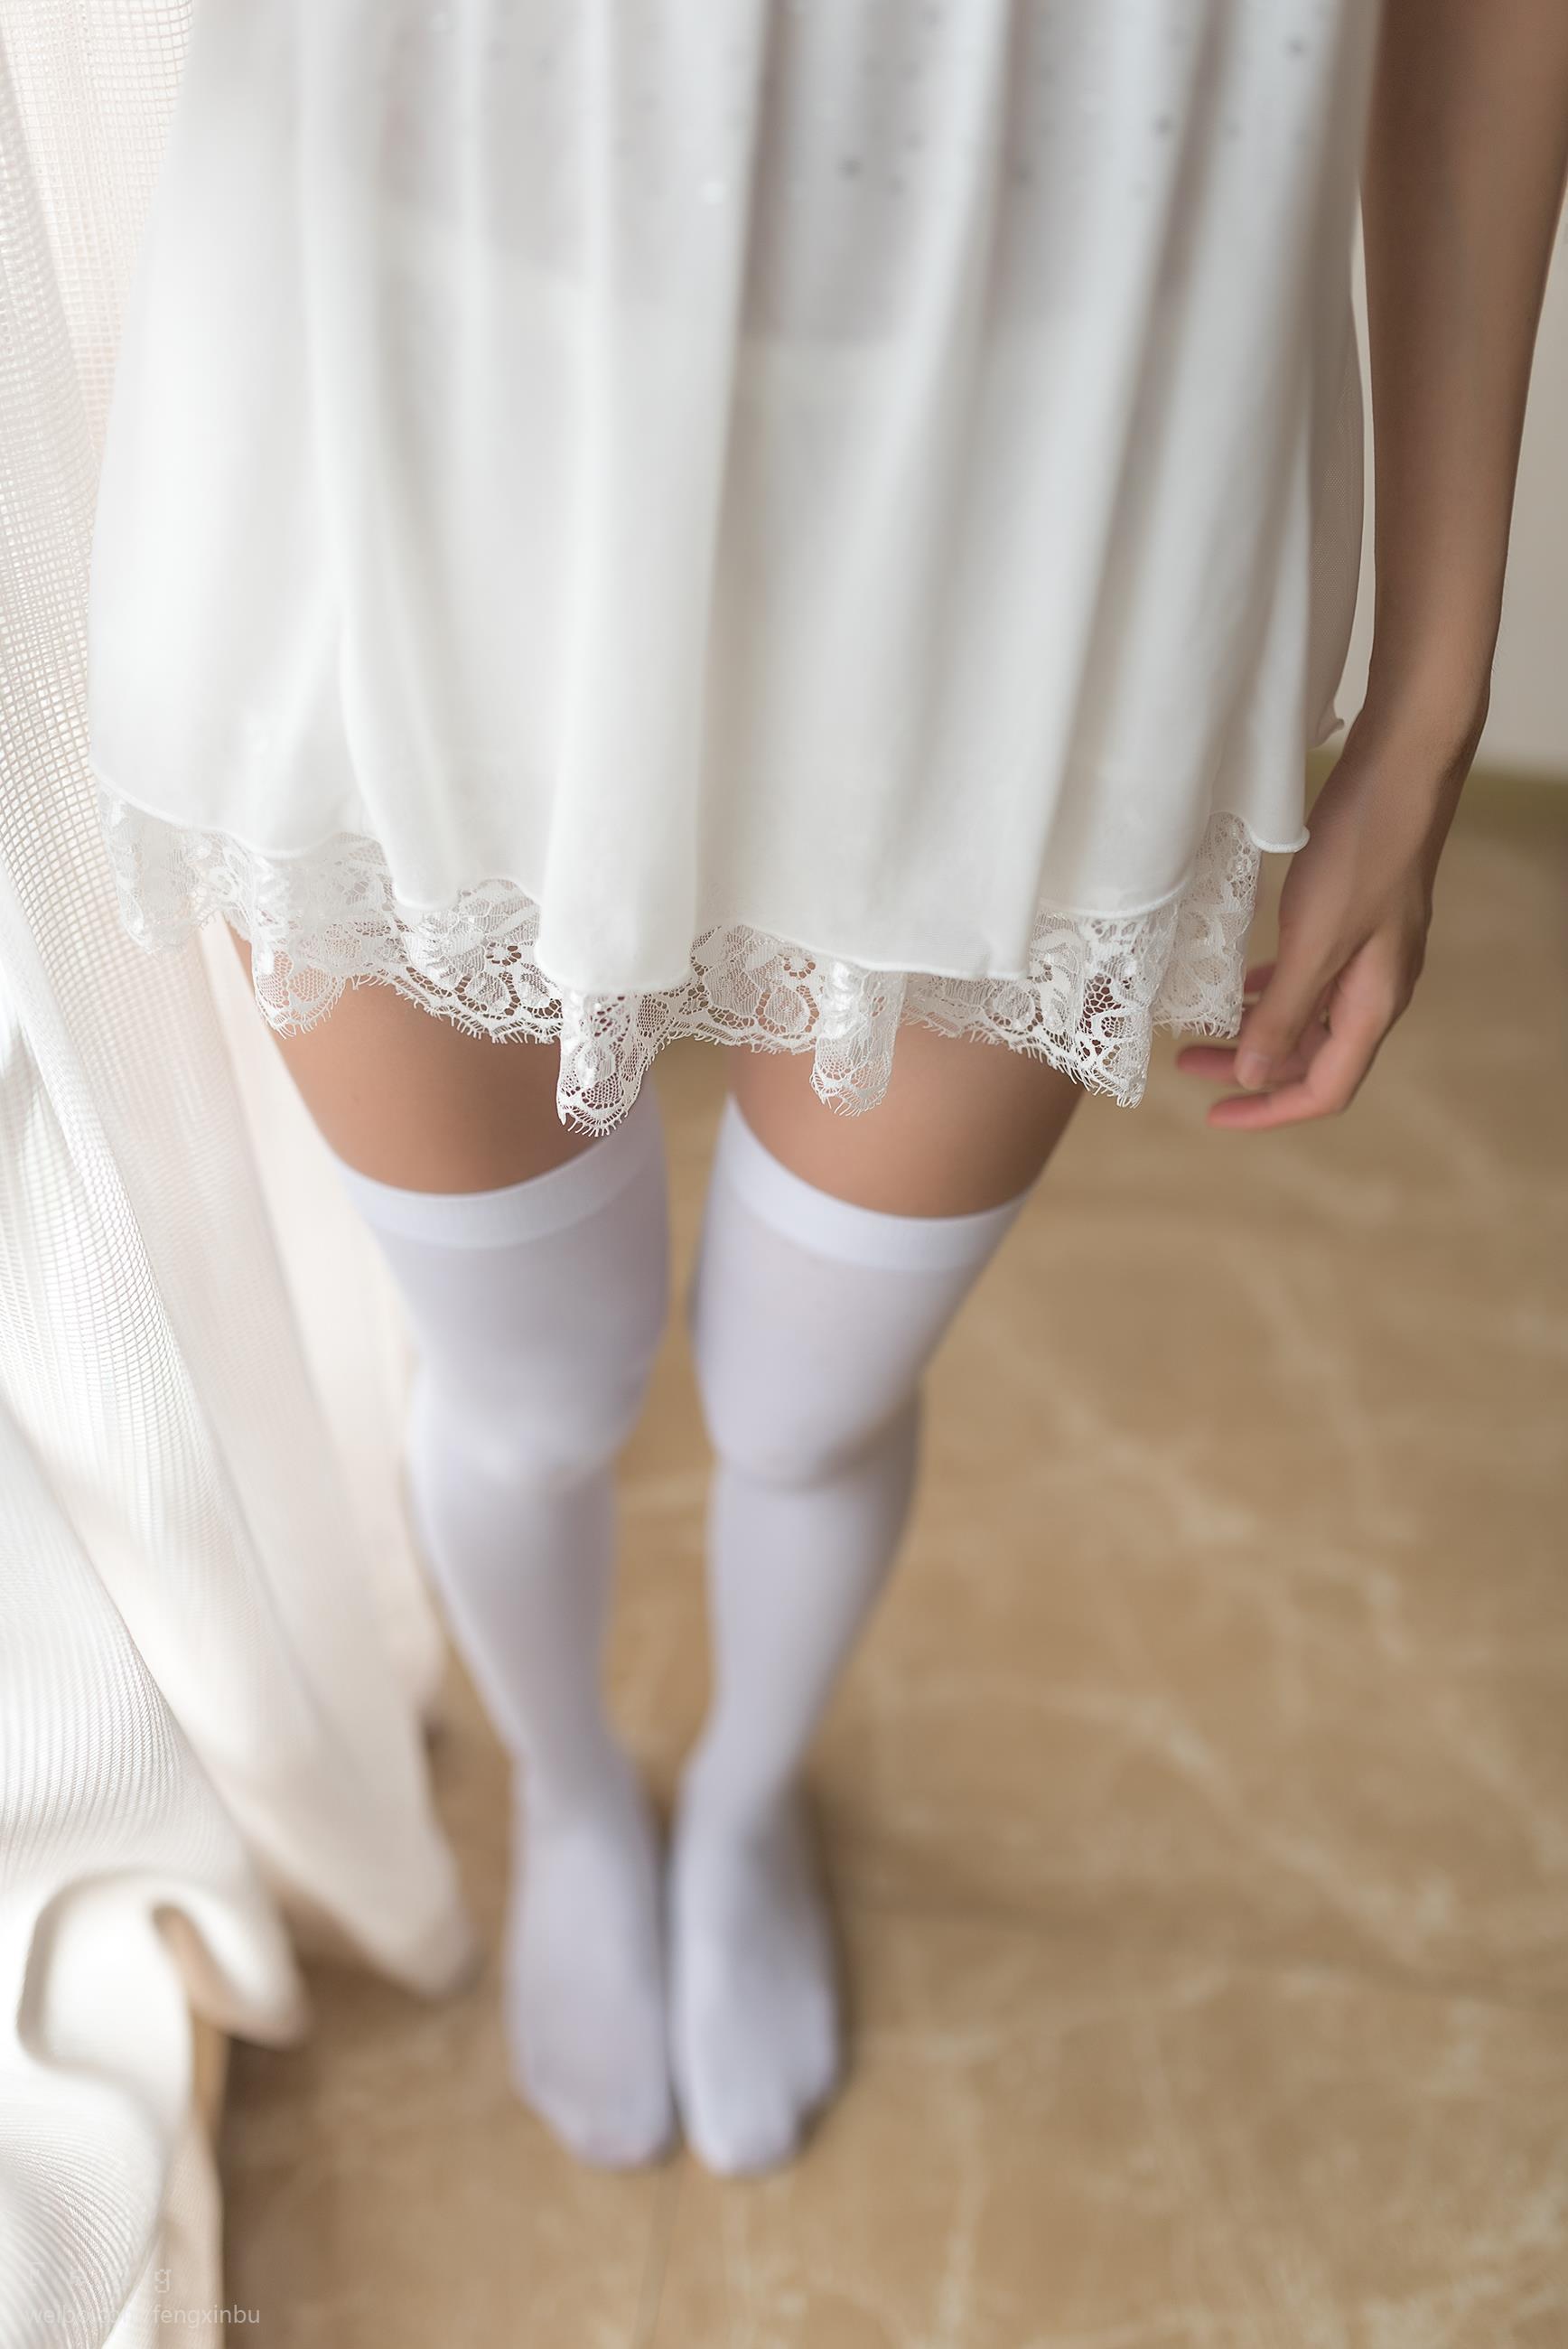 [风之领域]NO.046 性感小萝莉 白色吊带蕾丝睡衣裙加白色丝袜美腿私房写真集,